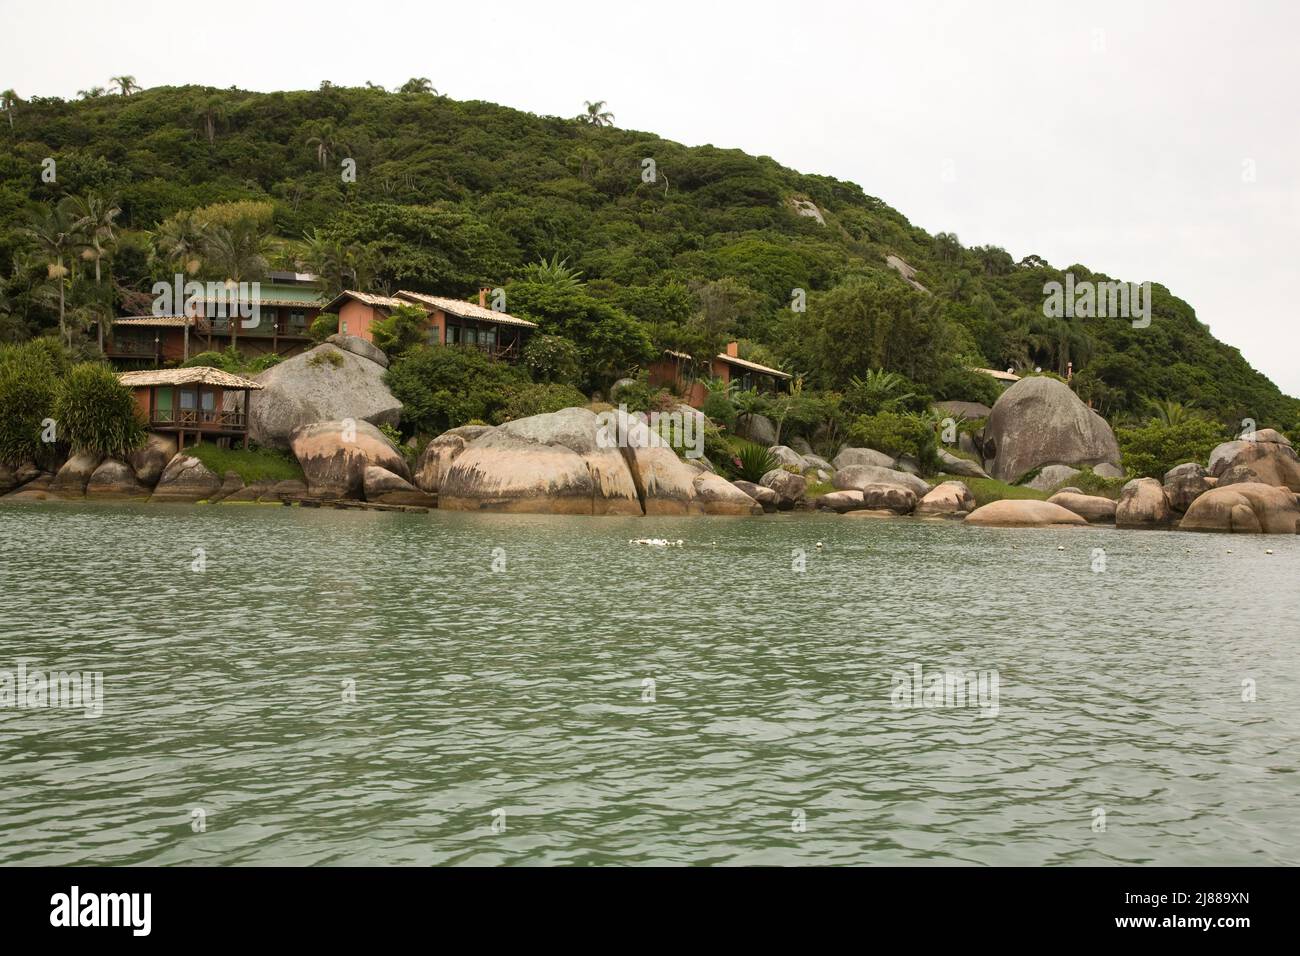 Ilha do Papagaio - Parrot Island Eco Resort, Santa Catarina, Brazil Stock Photo